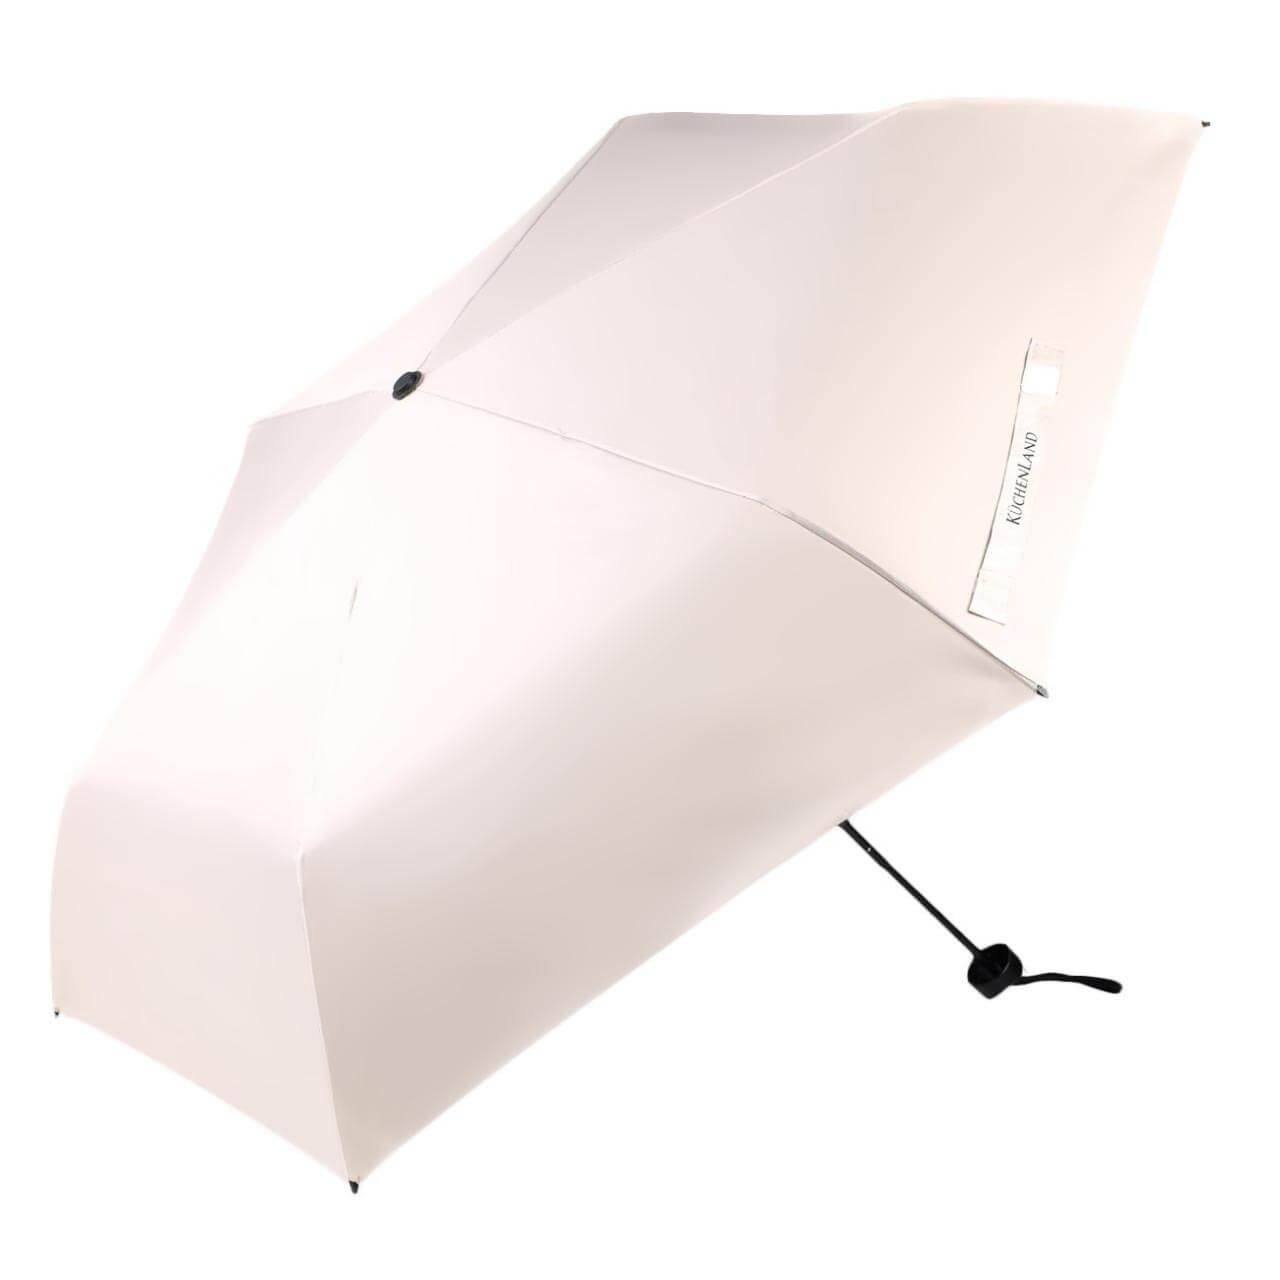 Зонт, 52 см, складной, двусторонний, эпонж, бежево-черный, Rainy day двусторонний водный точильный камень для заточки ножей urm